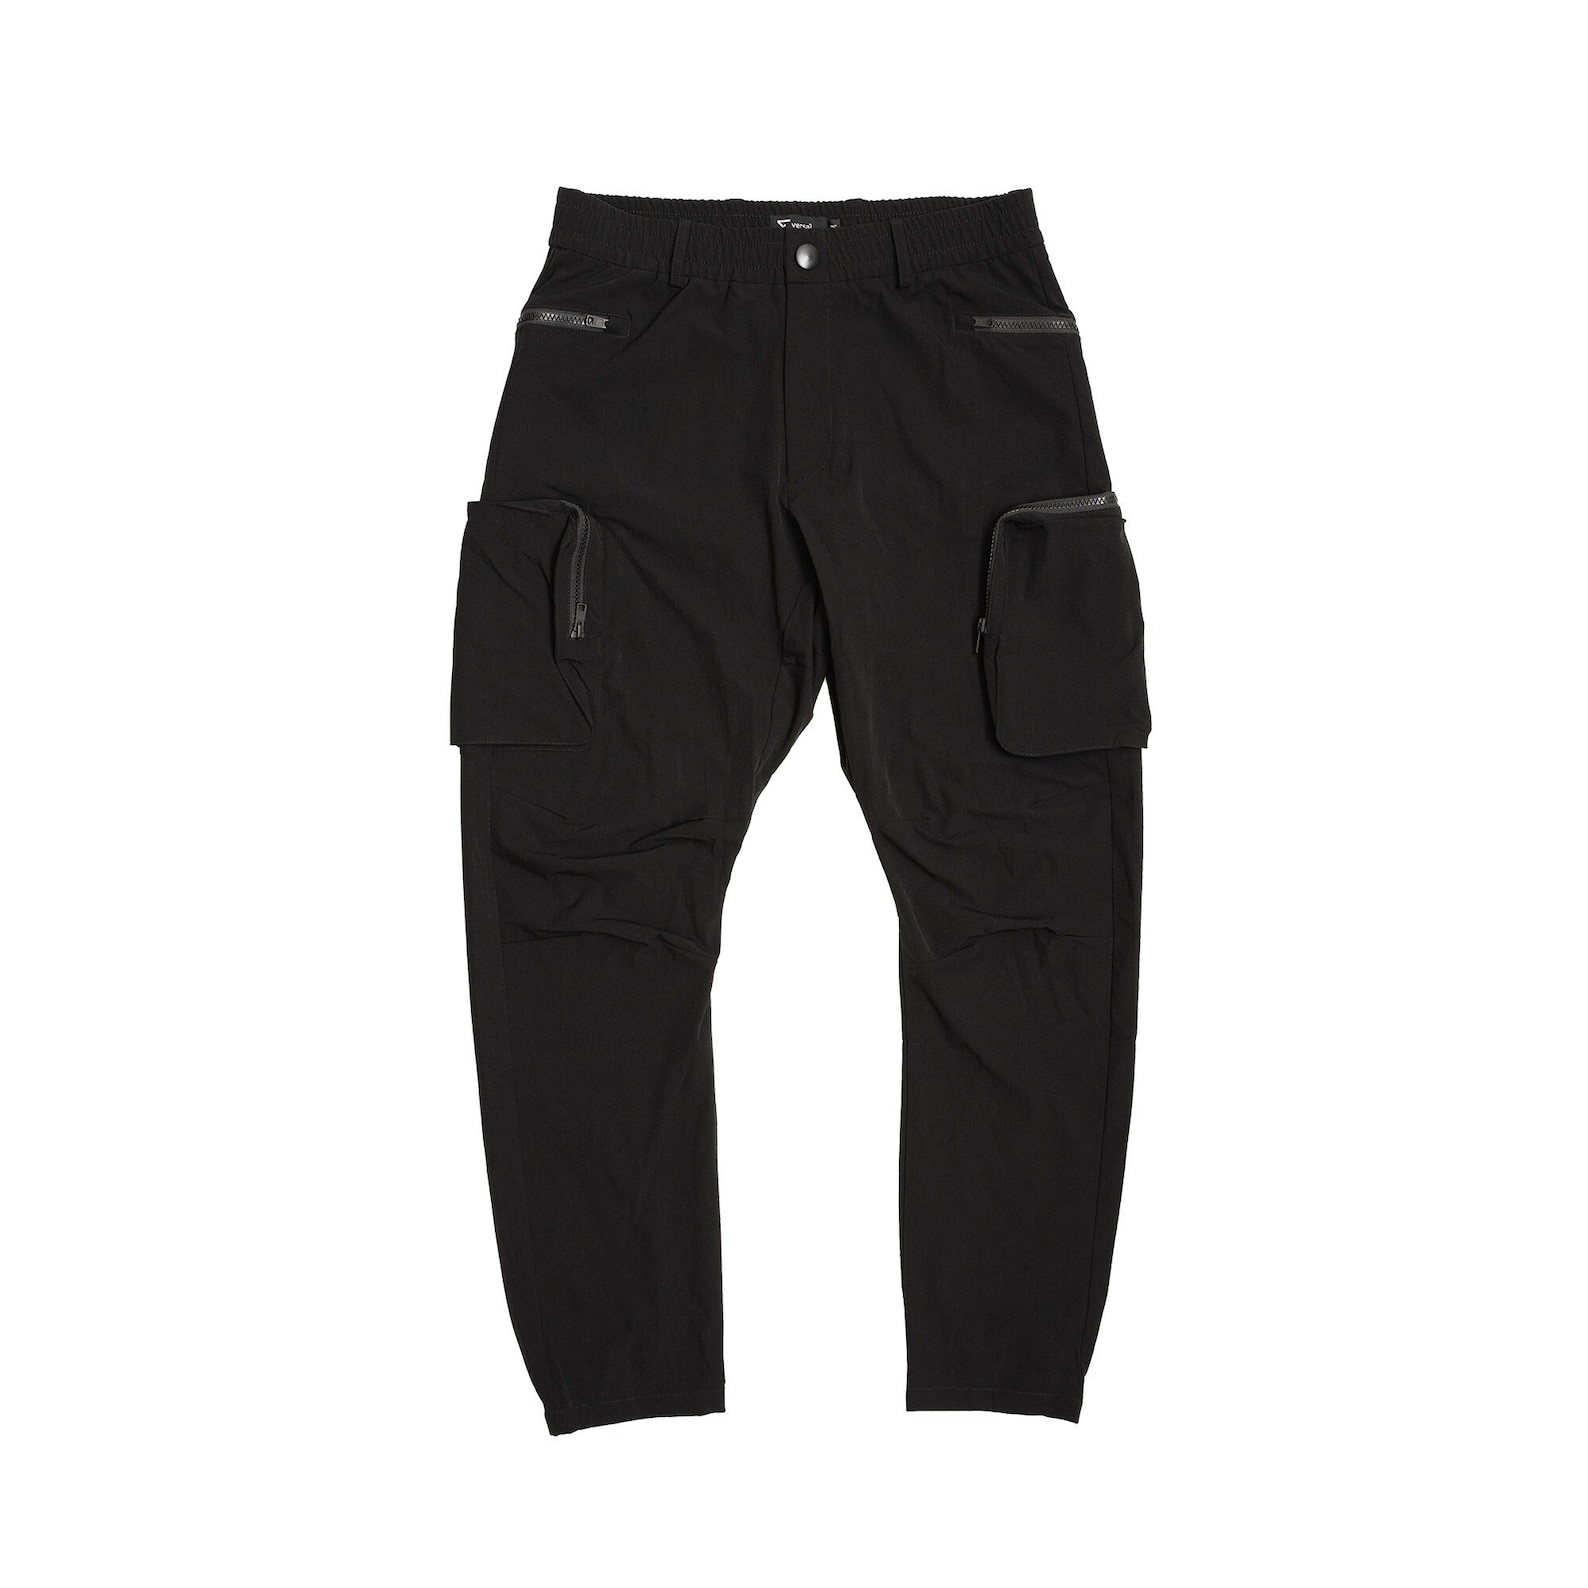 Black Cargo Pants Water Resistant Techwear Gorpcore Streetwear DWR ...